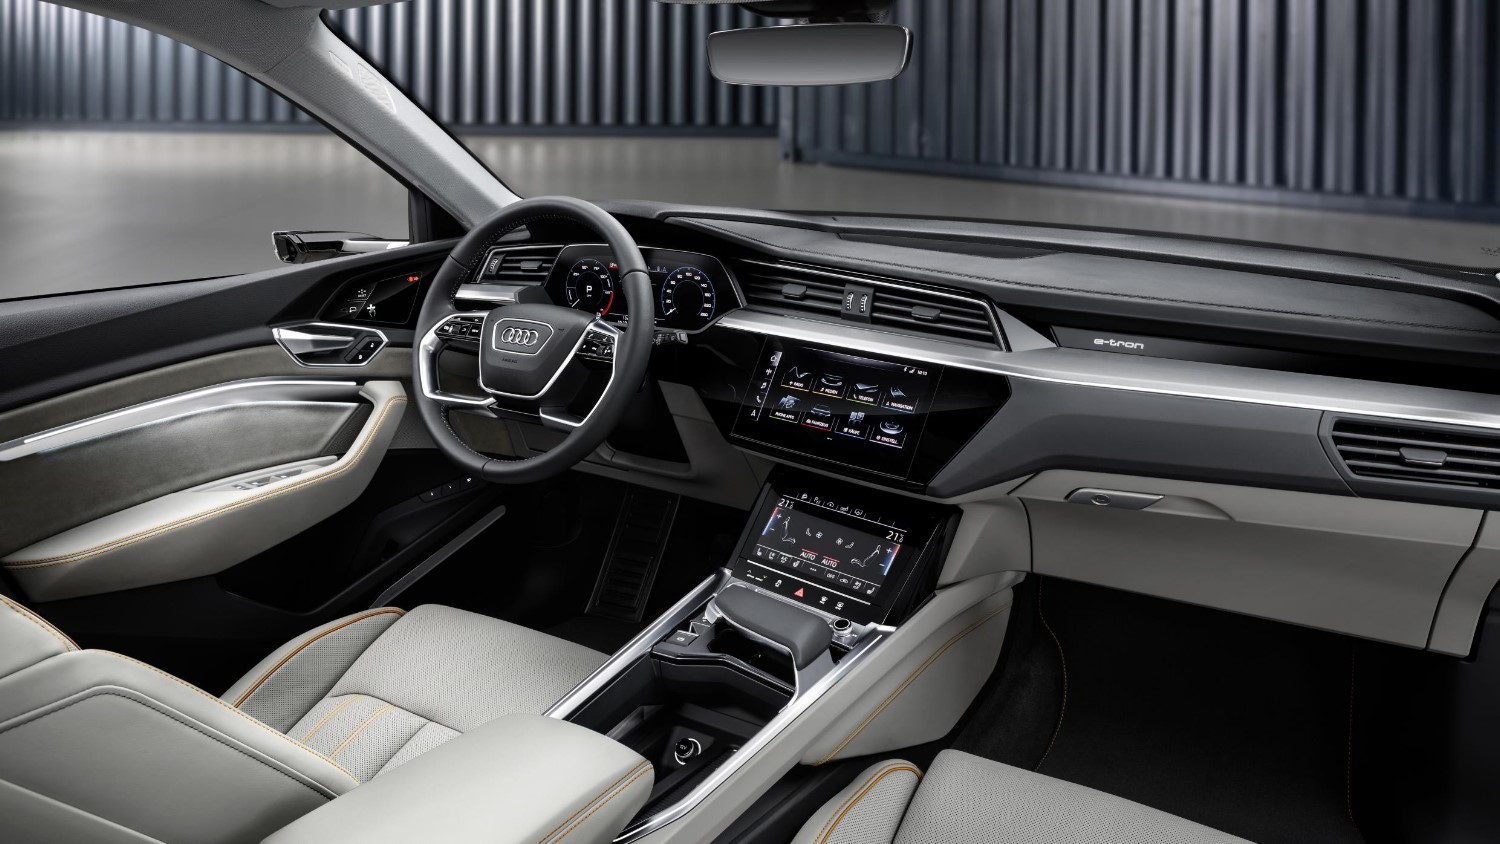 Typical Audi plush interior